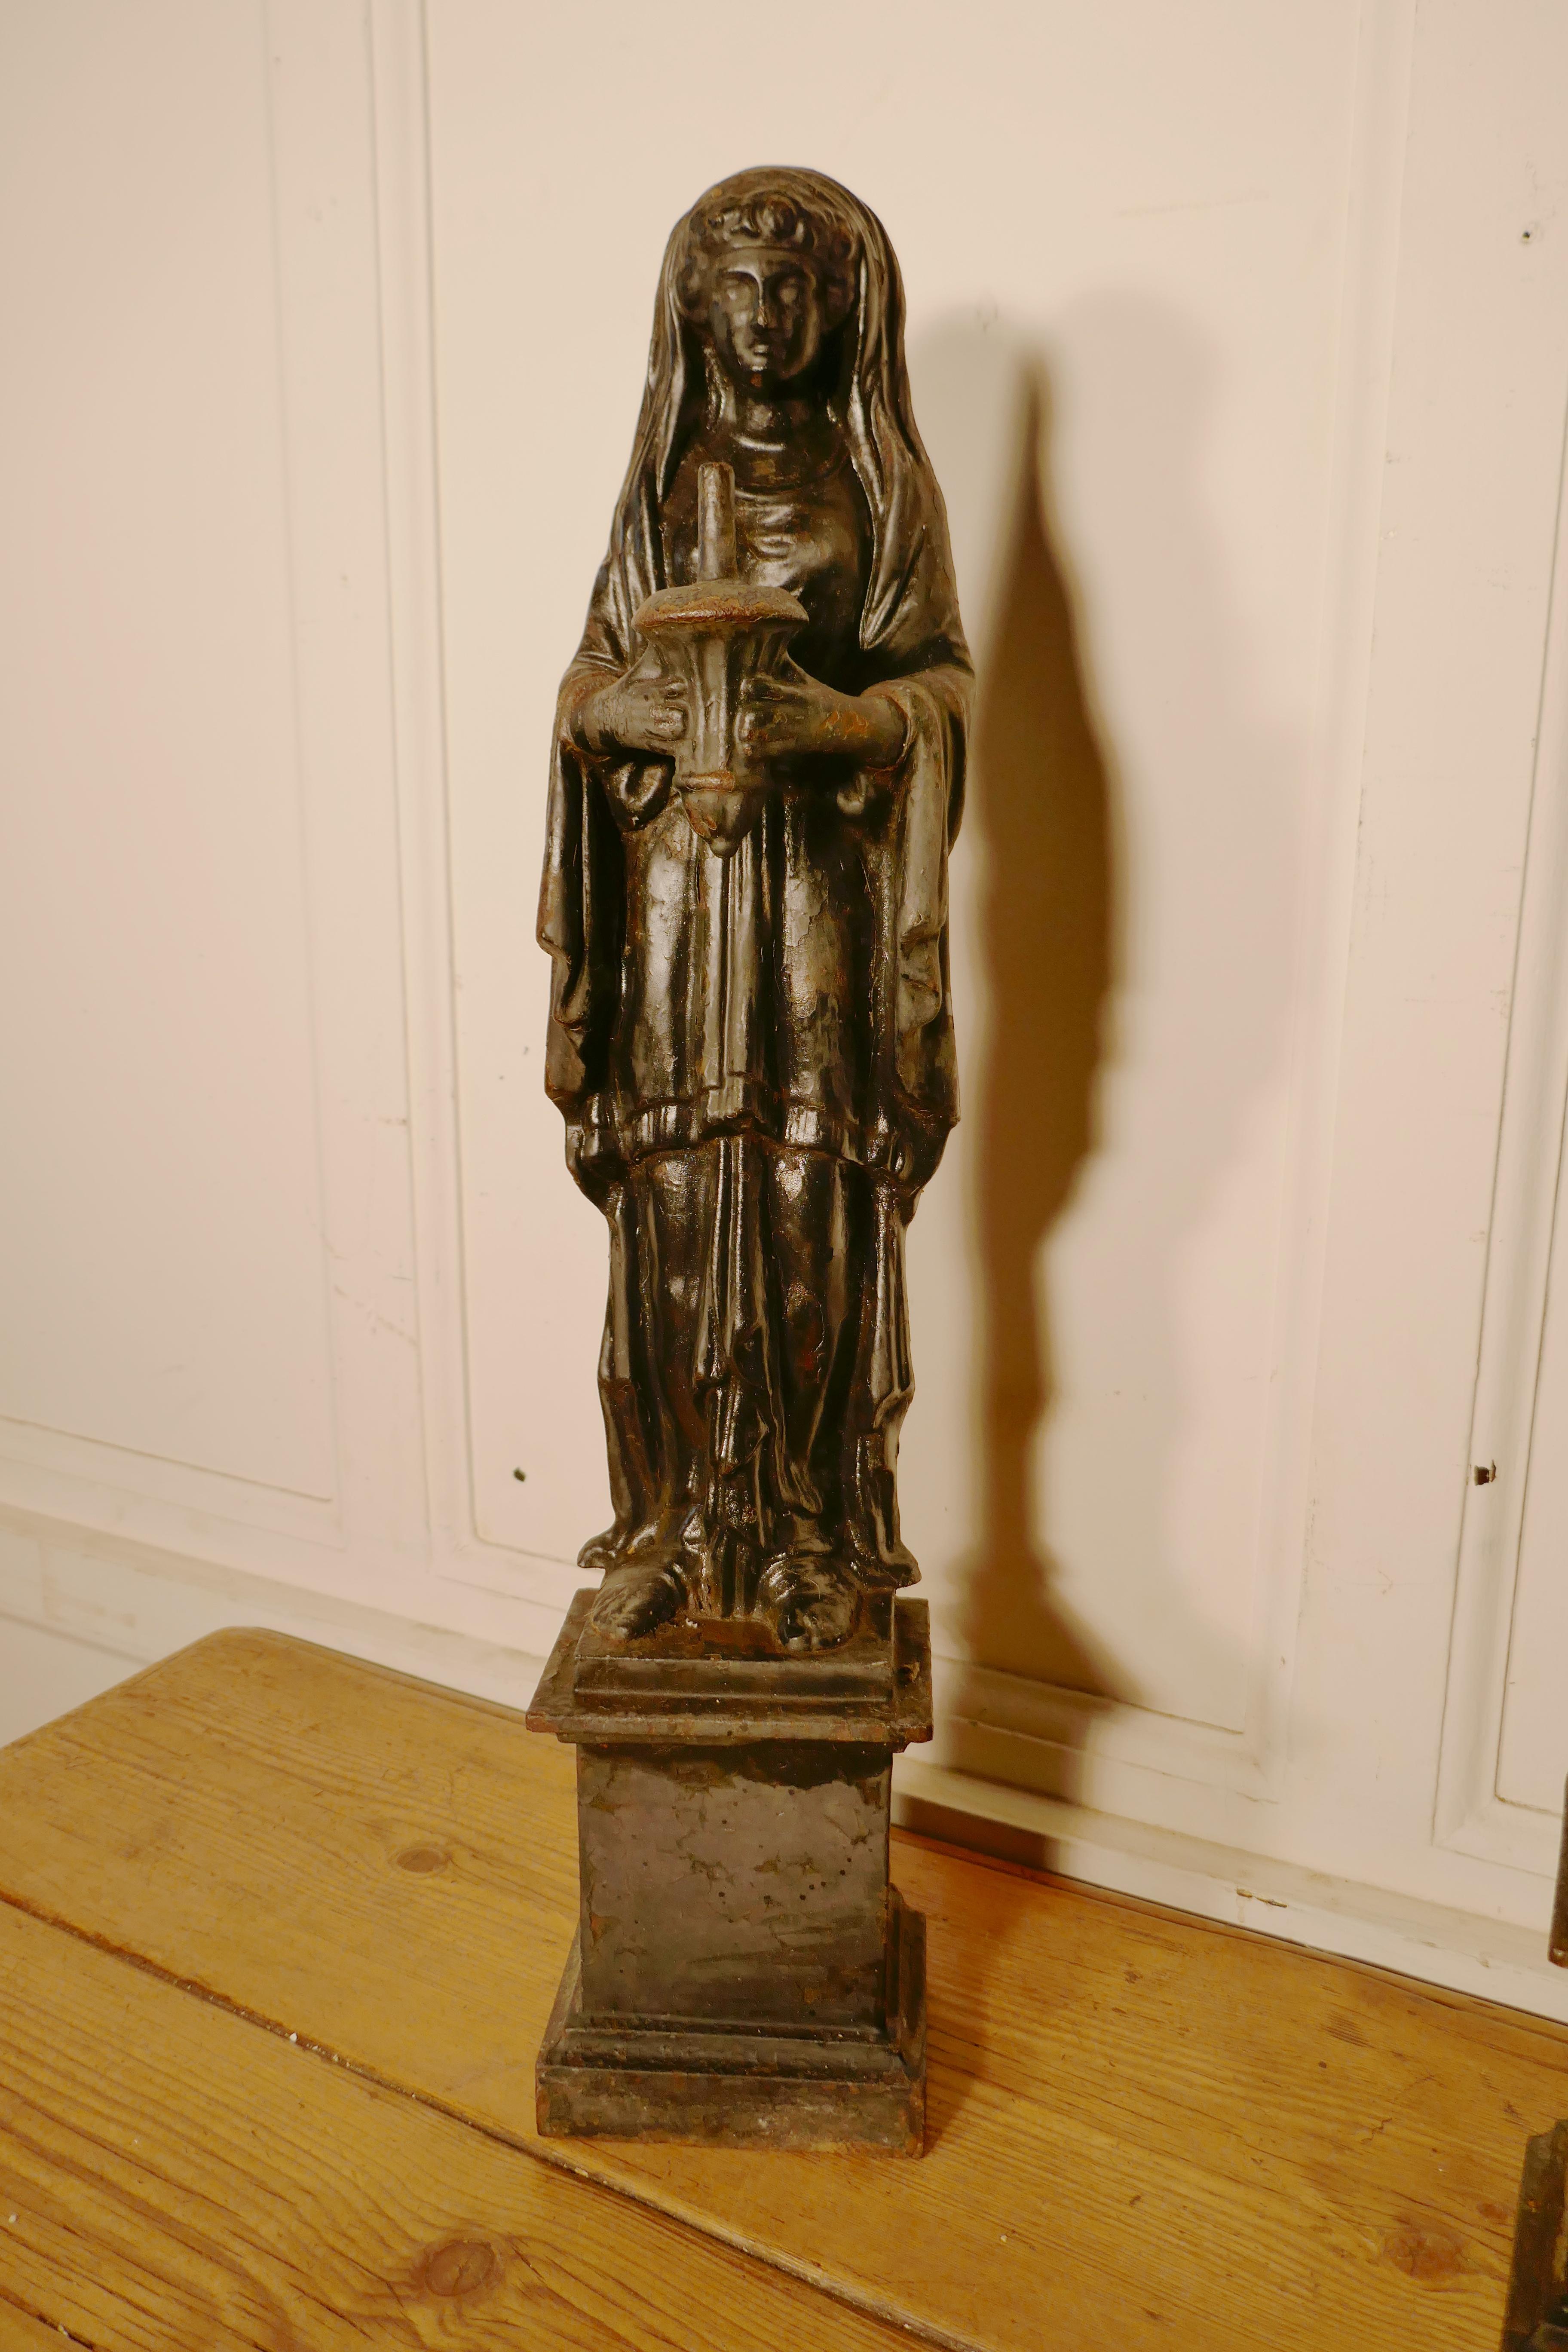 Paire de figures féminines en fonte du XIXe siècle tenant un pilon et un mortier.

Une belle paire de figures, elles sont très lourdes ; chacune des figures tient un mortier, l'une avec un pilon et l'autre sans, elles peuvent provenir d'une